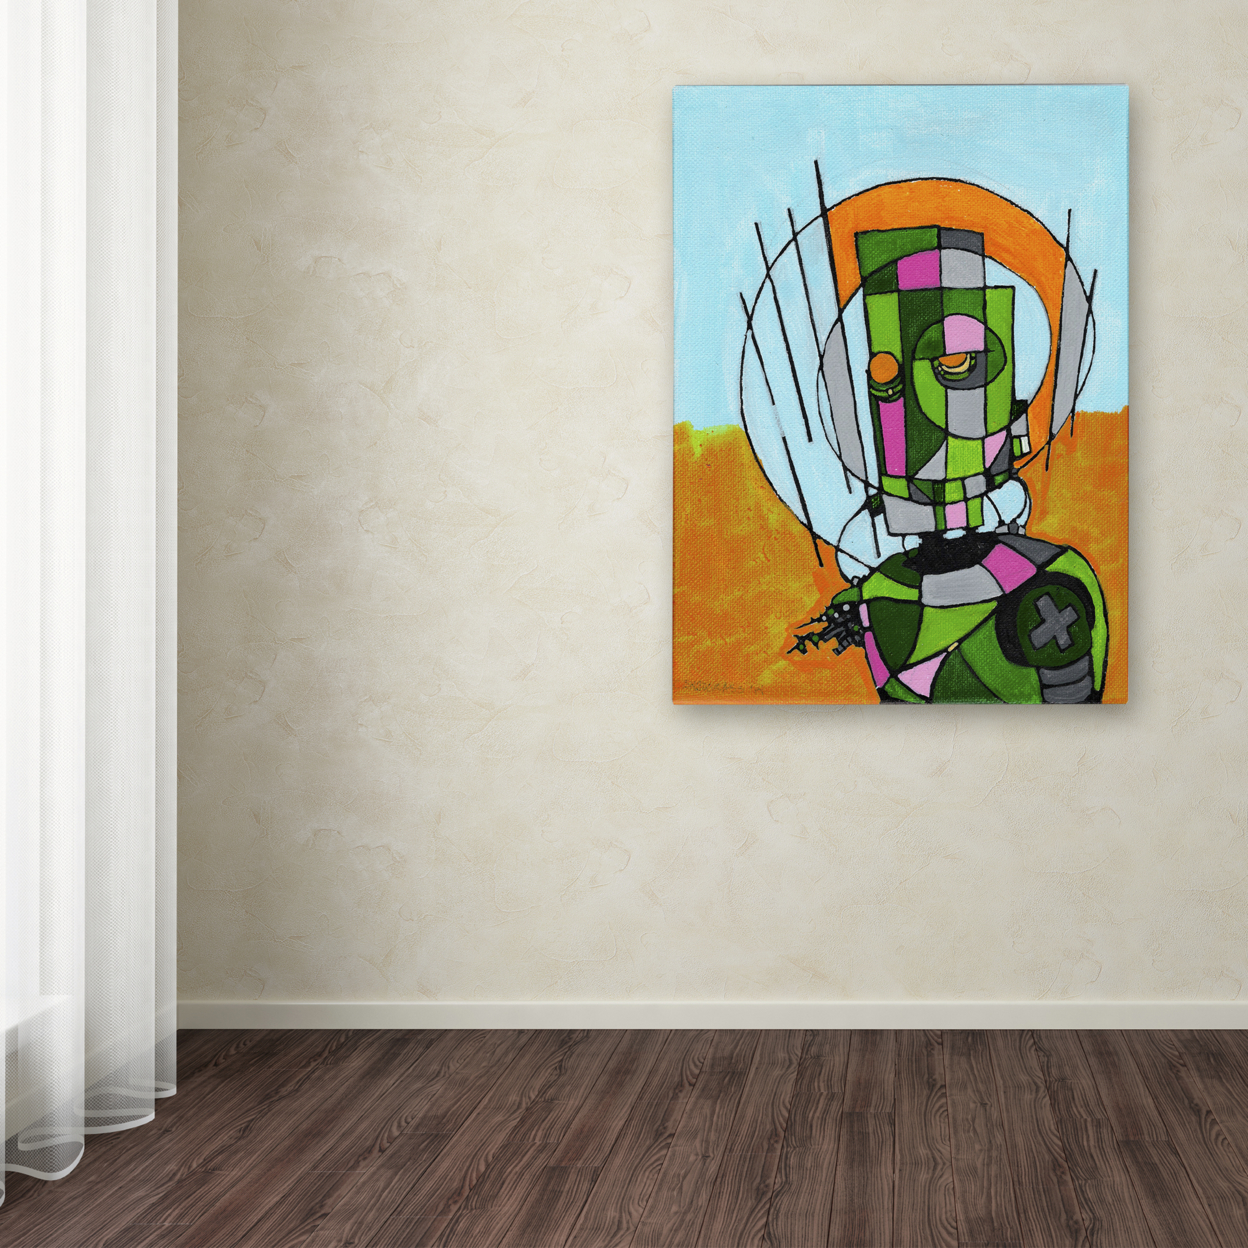 Craig Snodgrass 'Segmented Man II' Canvas Wall Art 35 X 47 Inches